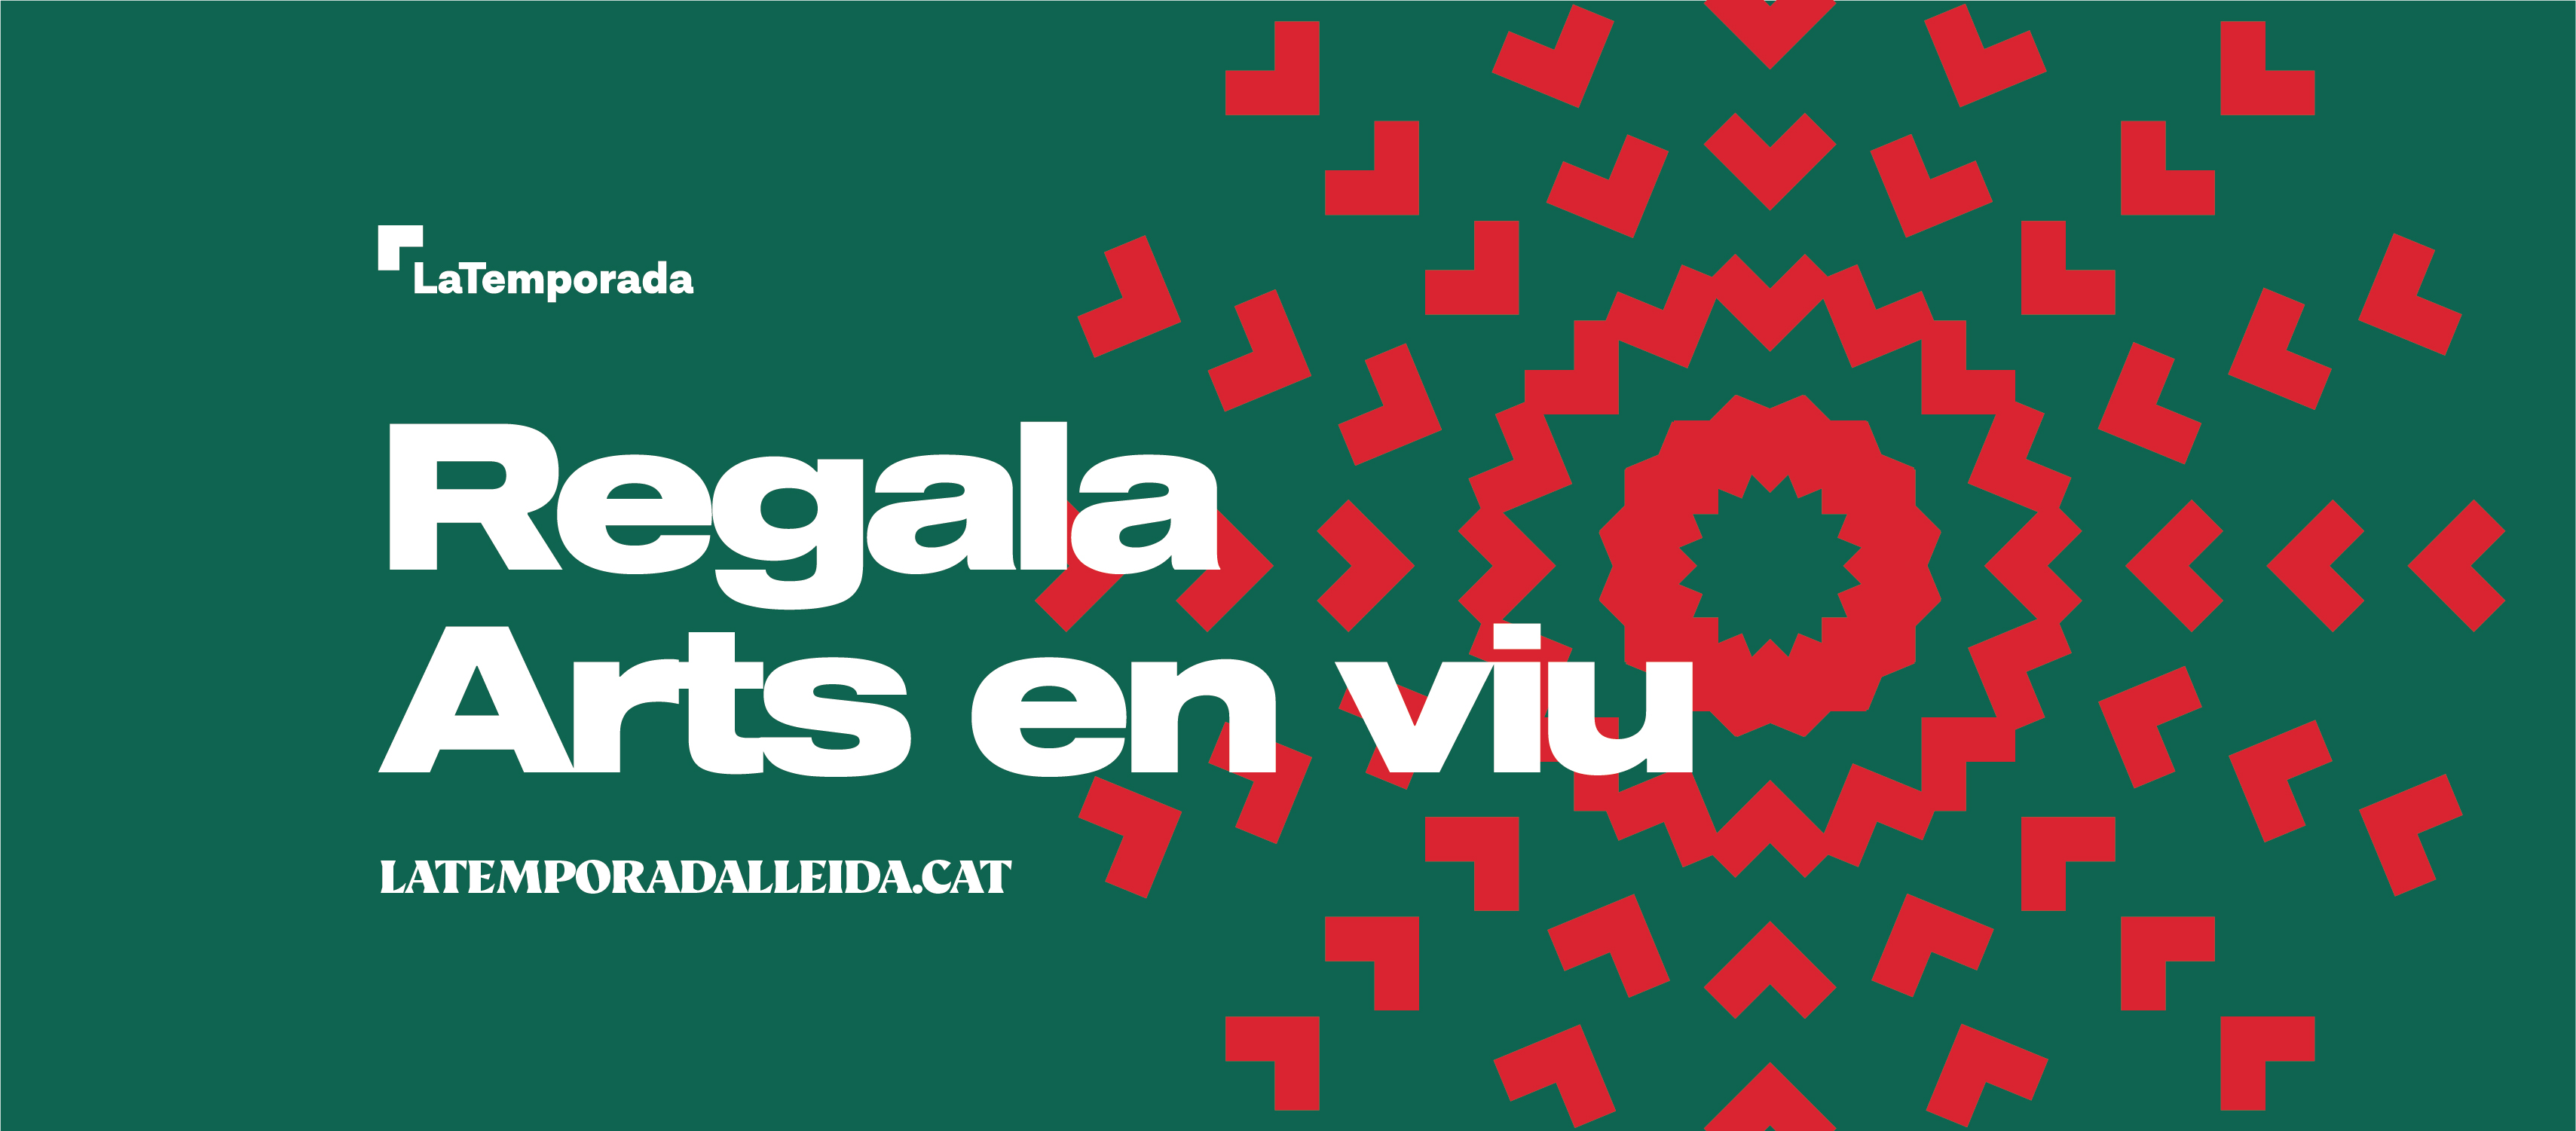 “Regala Arts en Viu” és la nova campanya de Nadal de LaTemporada Lleida coincidint amb la posada a la venda avui de les entrades per als espectacles de la nova programació de gener-juny